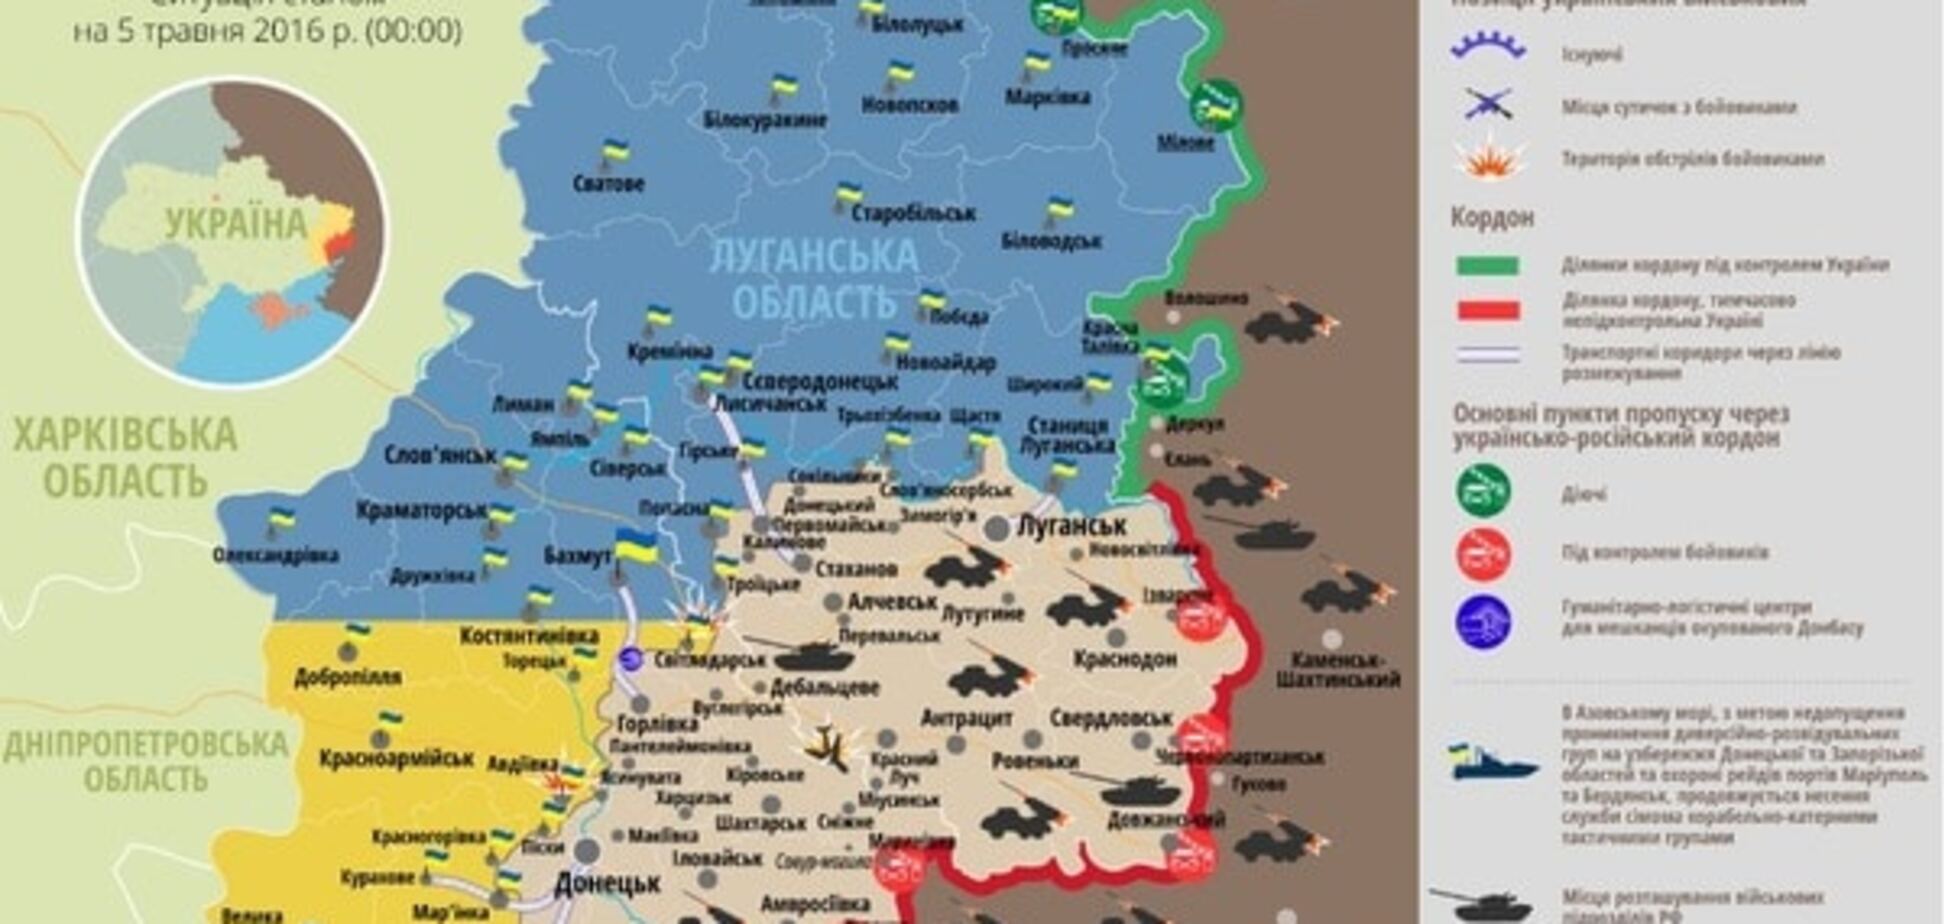 Українські бійці підірвалися на міні в районі Мар'їнки: карта АТО